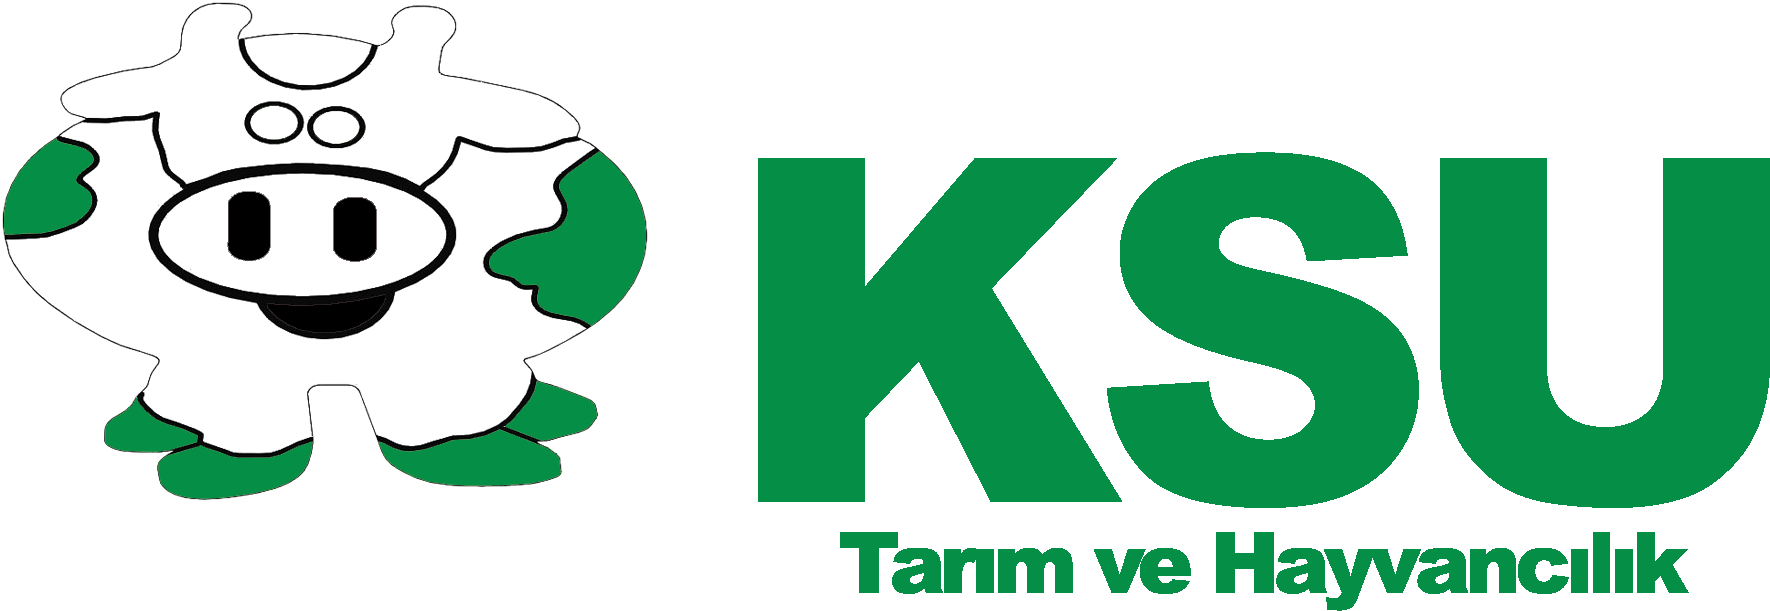 KSU Tarım ve Hayvancılık Logo